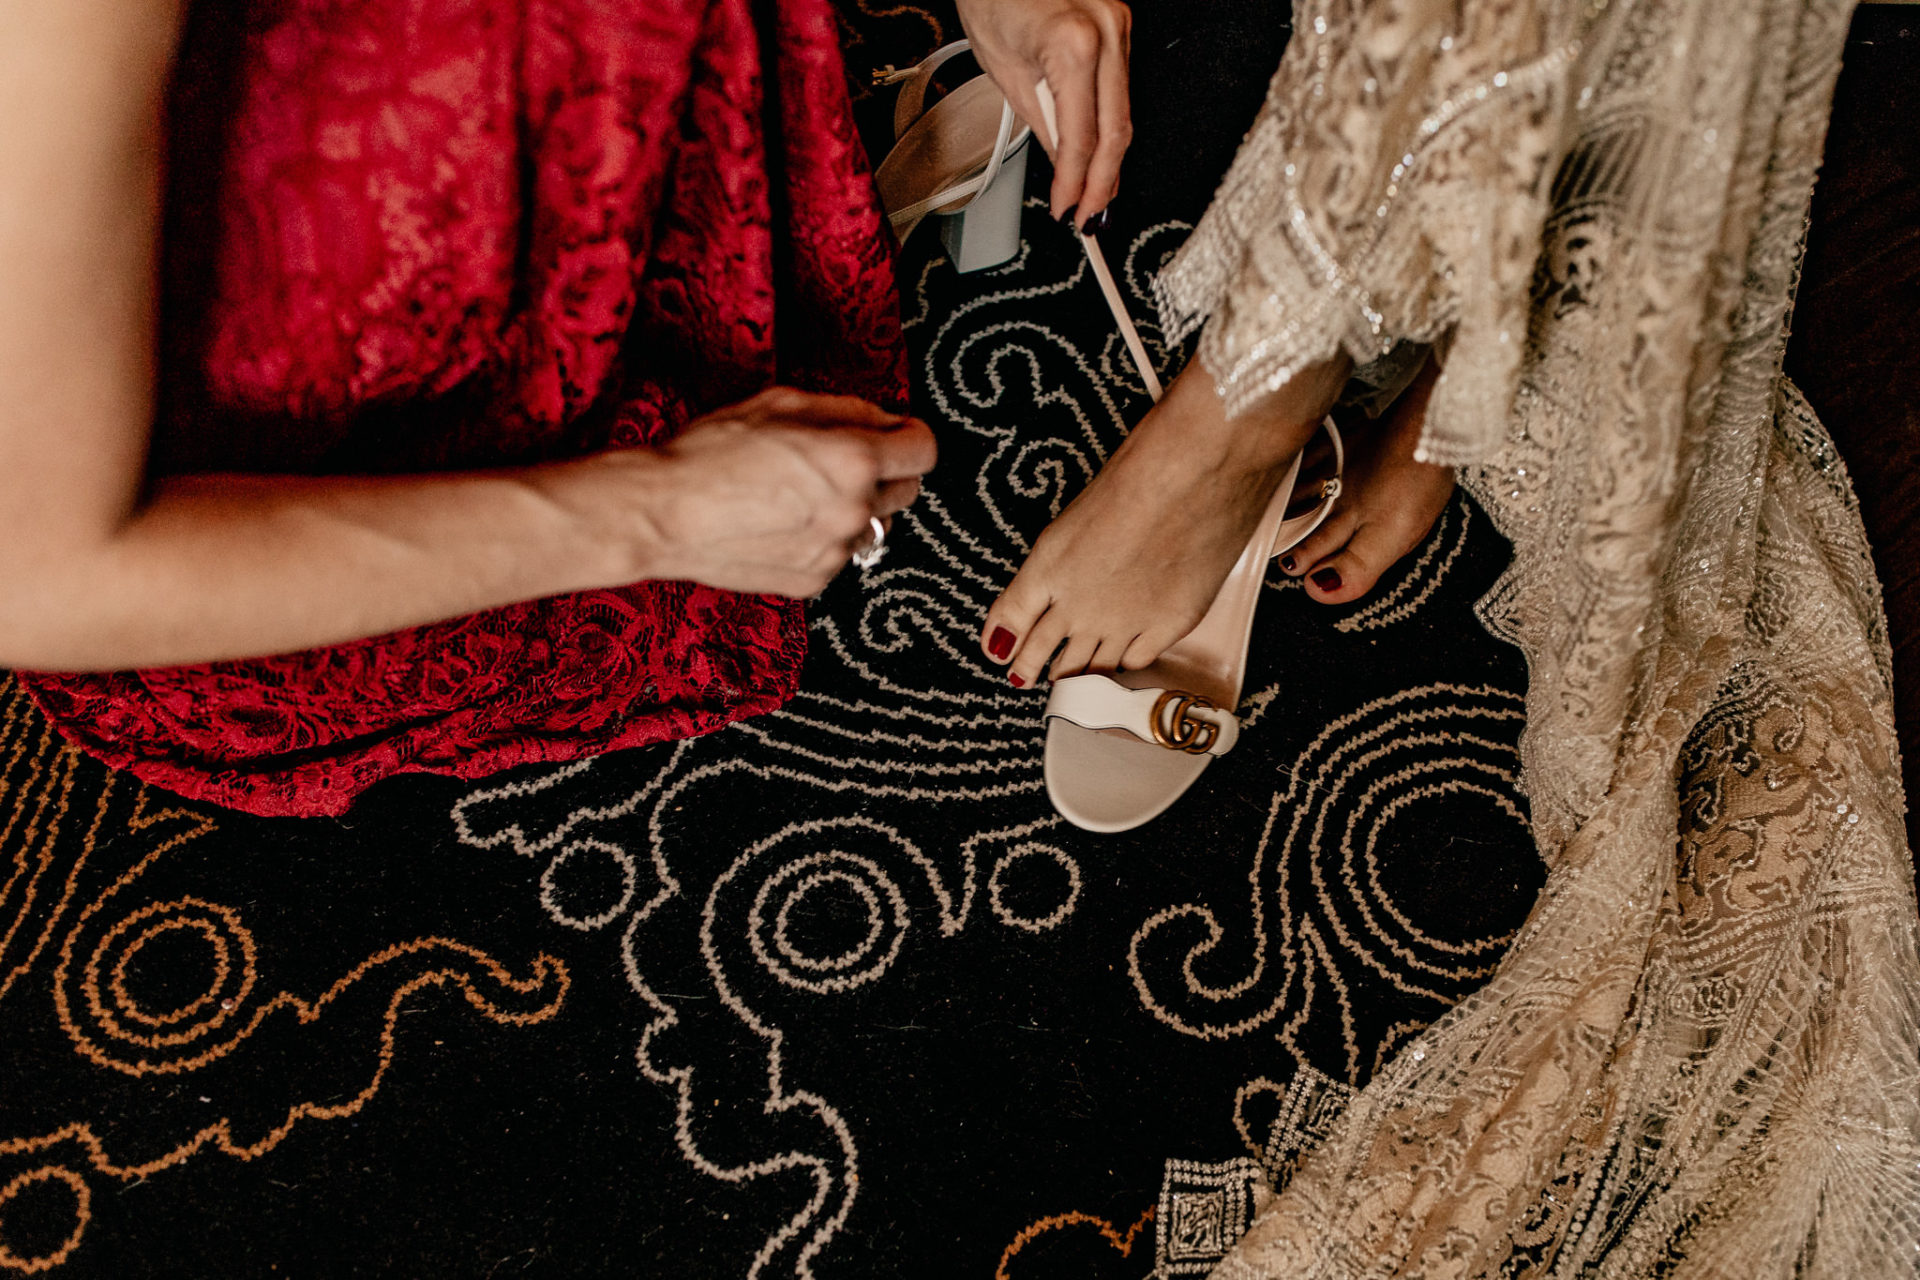 dokumentarische Hochzeitsfotografie-hochzeitsfotograf hotel am steinplatt berlin-ungestellte Portraits-glamuroese Hochzeit-dresscode-elegante braut-kubanische Hochzeit-kopflegenden Blumen Brautstrauß